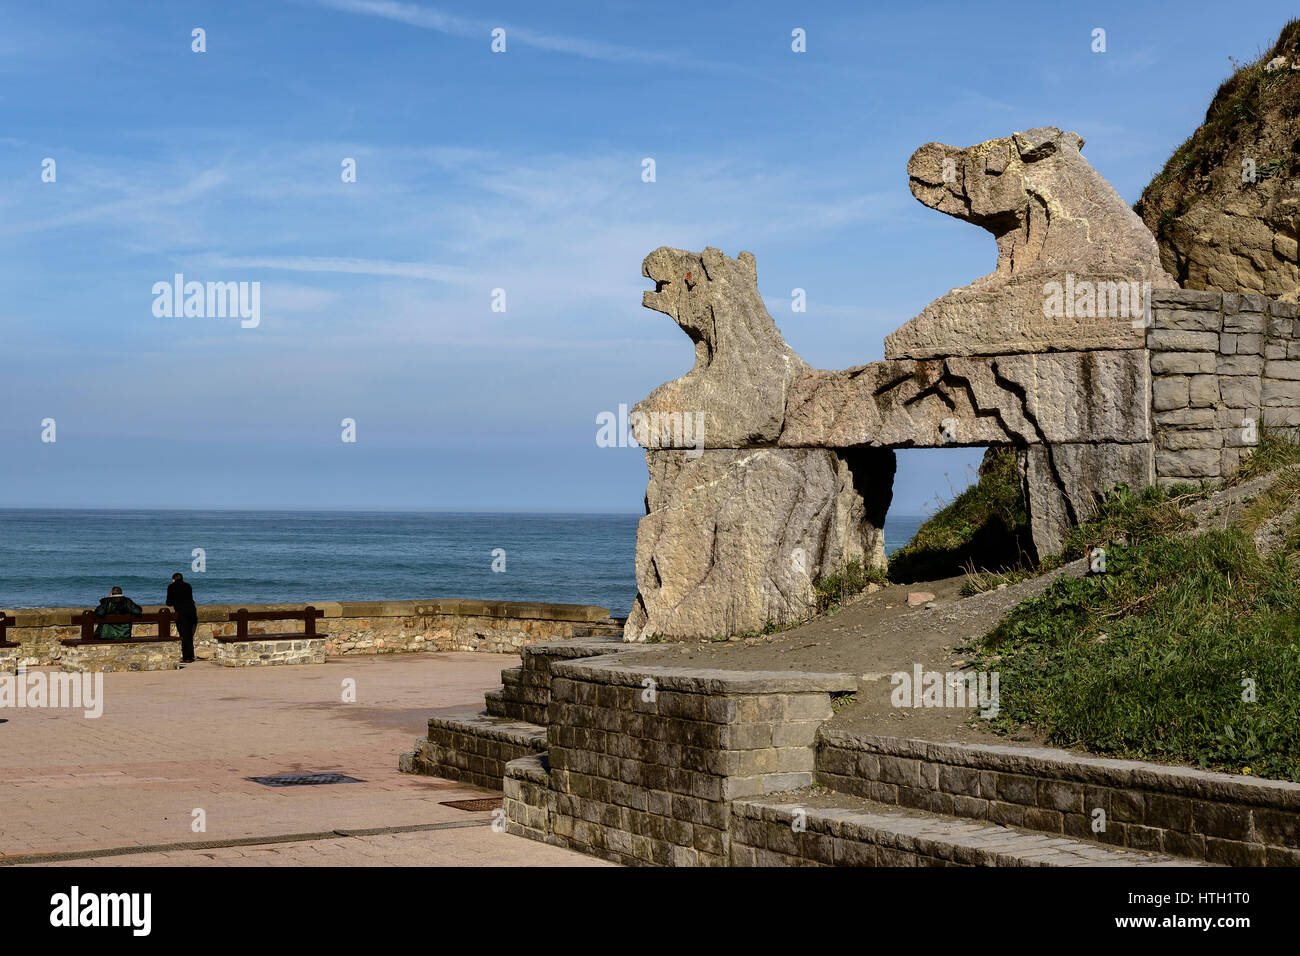 Strand und Klippen berühmt für Dreharbeiten acht Filmen baskischen Nachnamen und der Spielserie Throne. Itzurun, Zumaya, Guipuzcoa, Baskisches Land, Spanien. Stockfoto